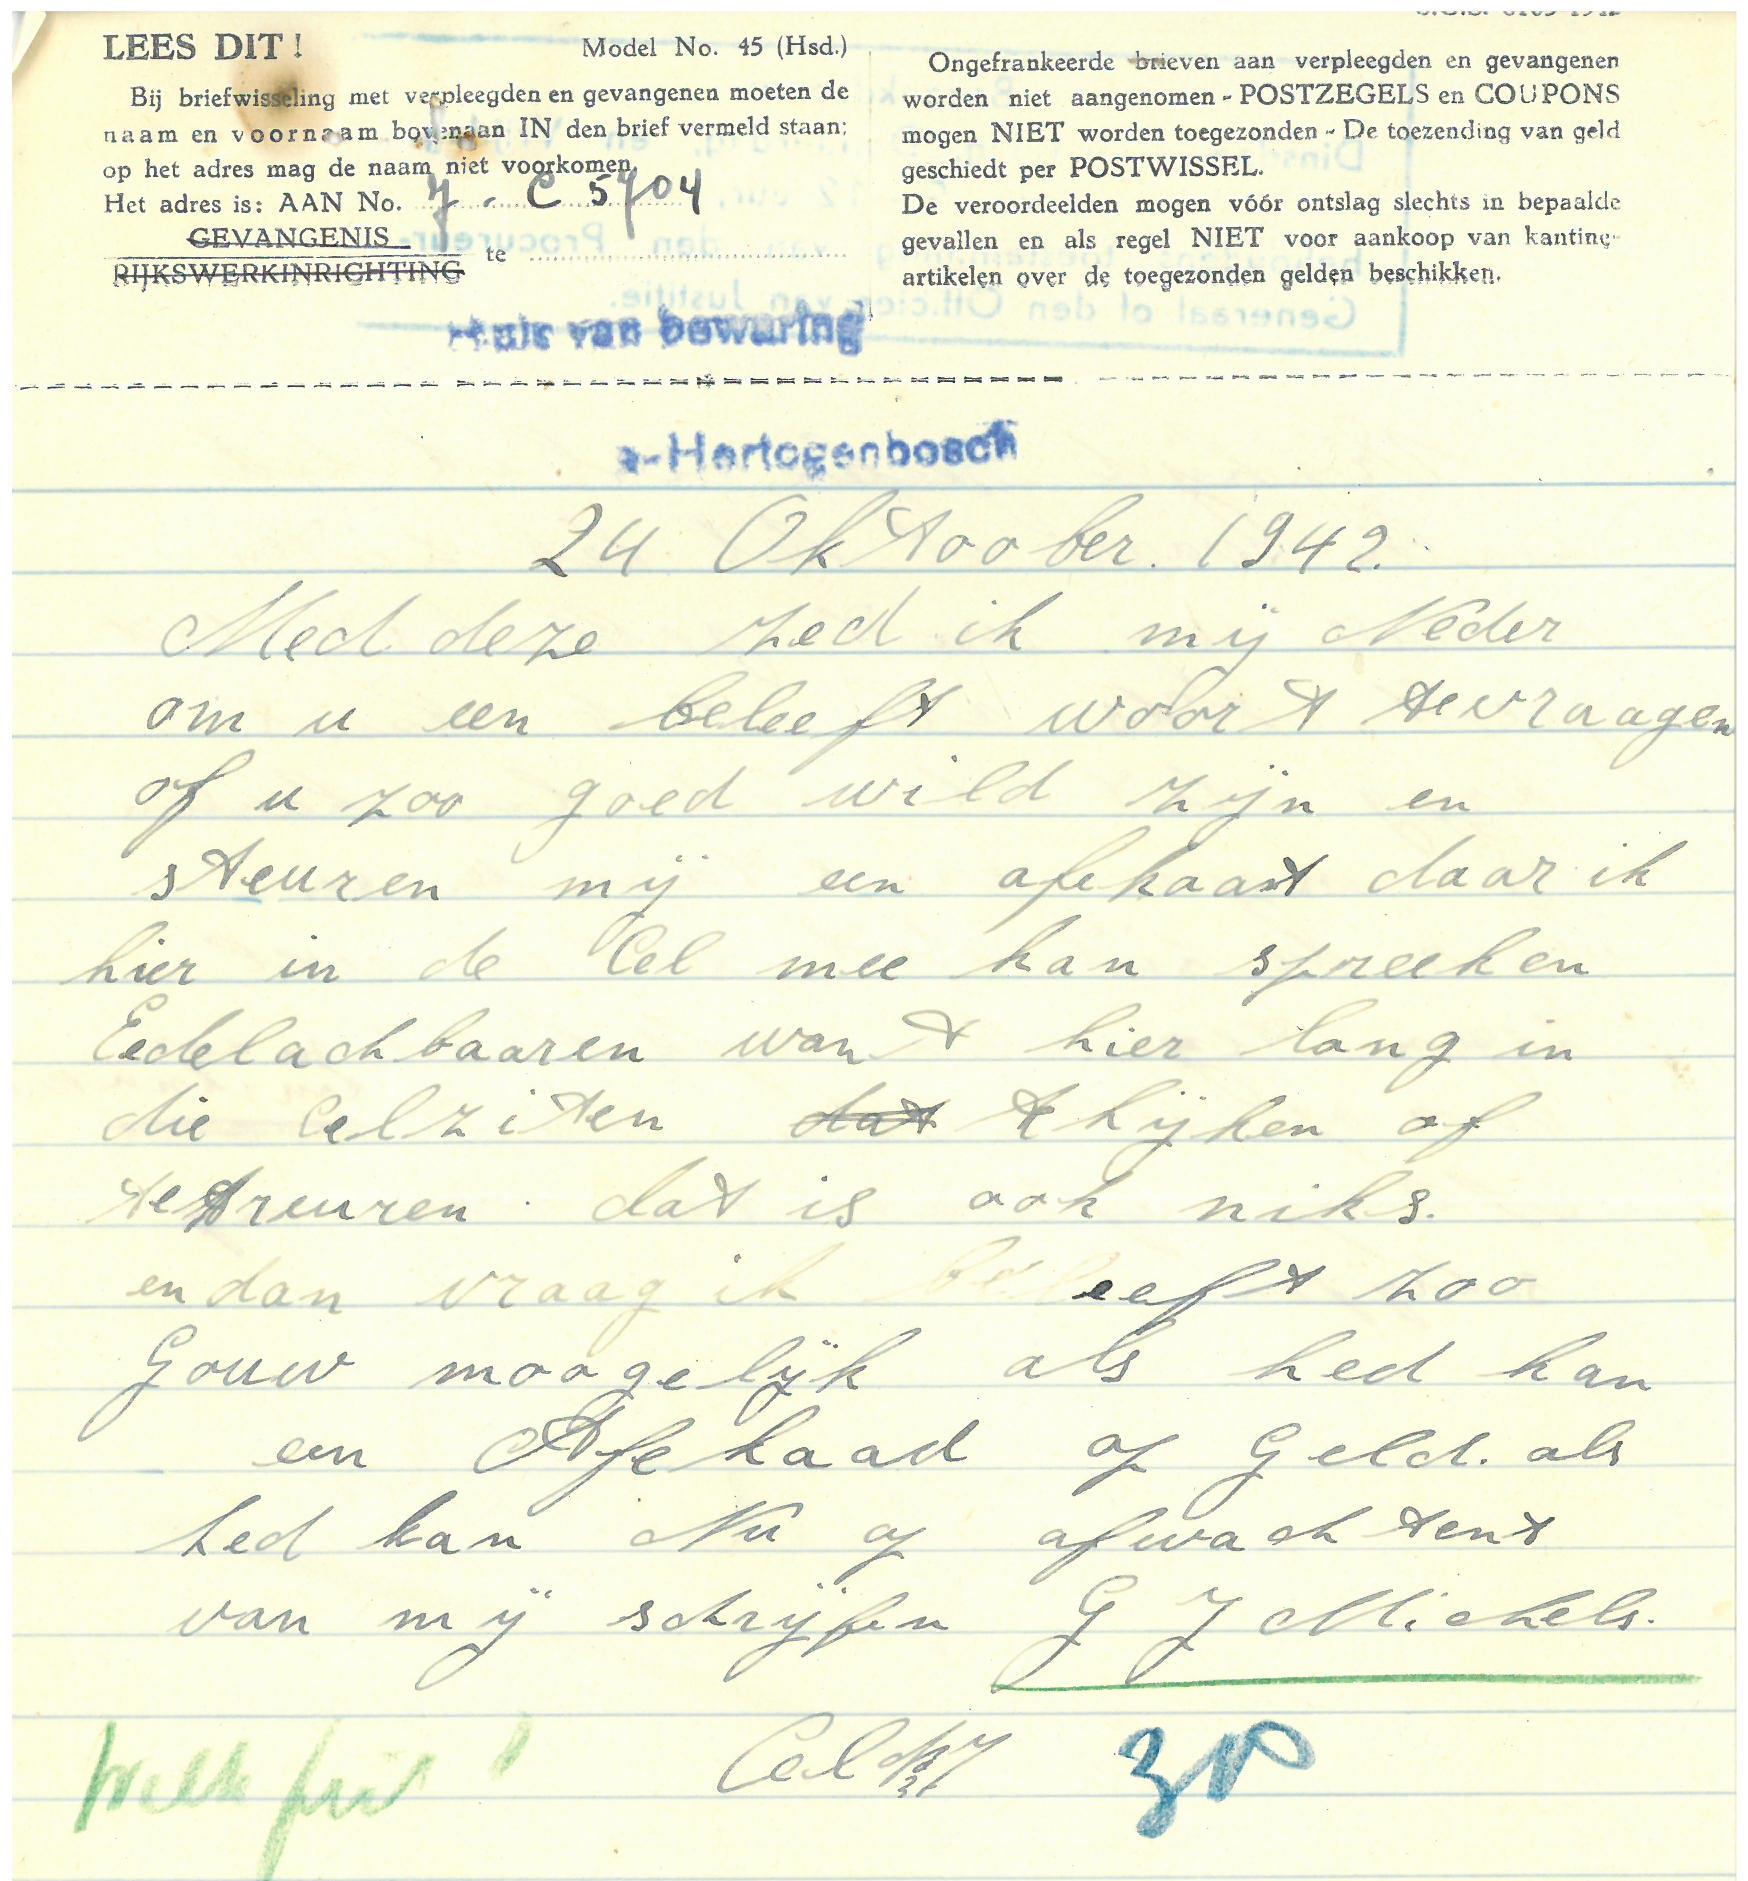 Verzoek van Michels om een 'afekaat' (advocaat). 24 oktober 1942.